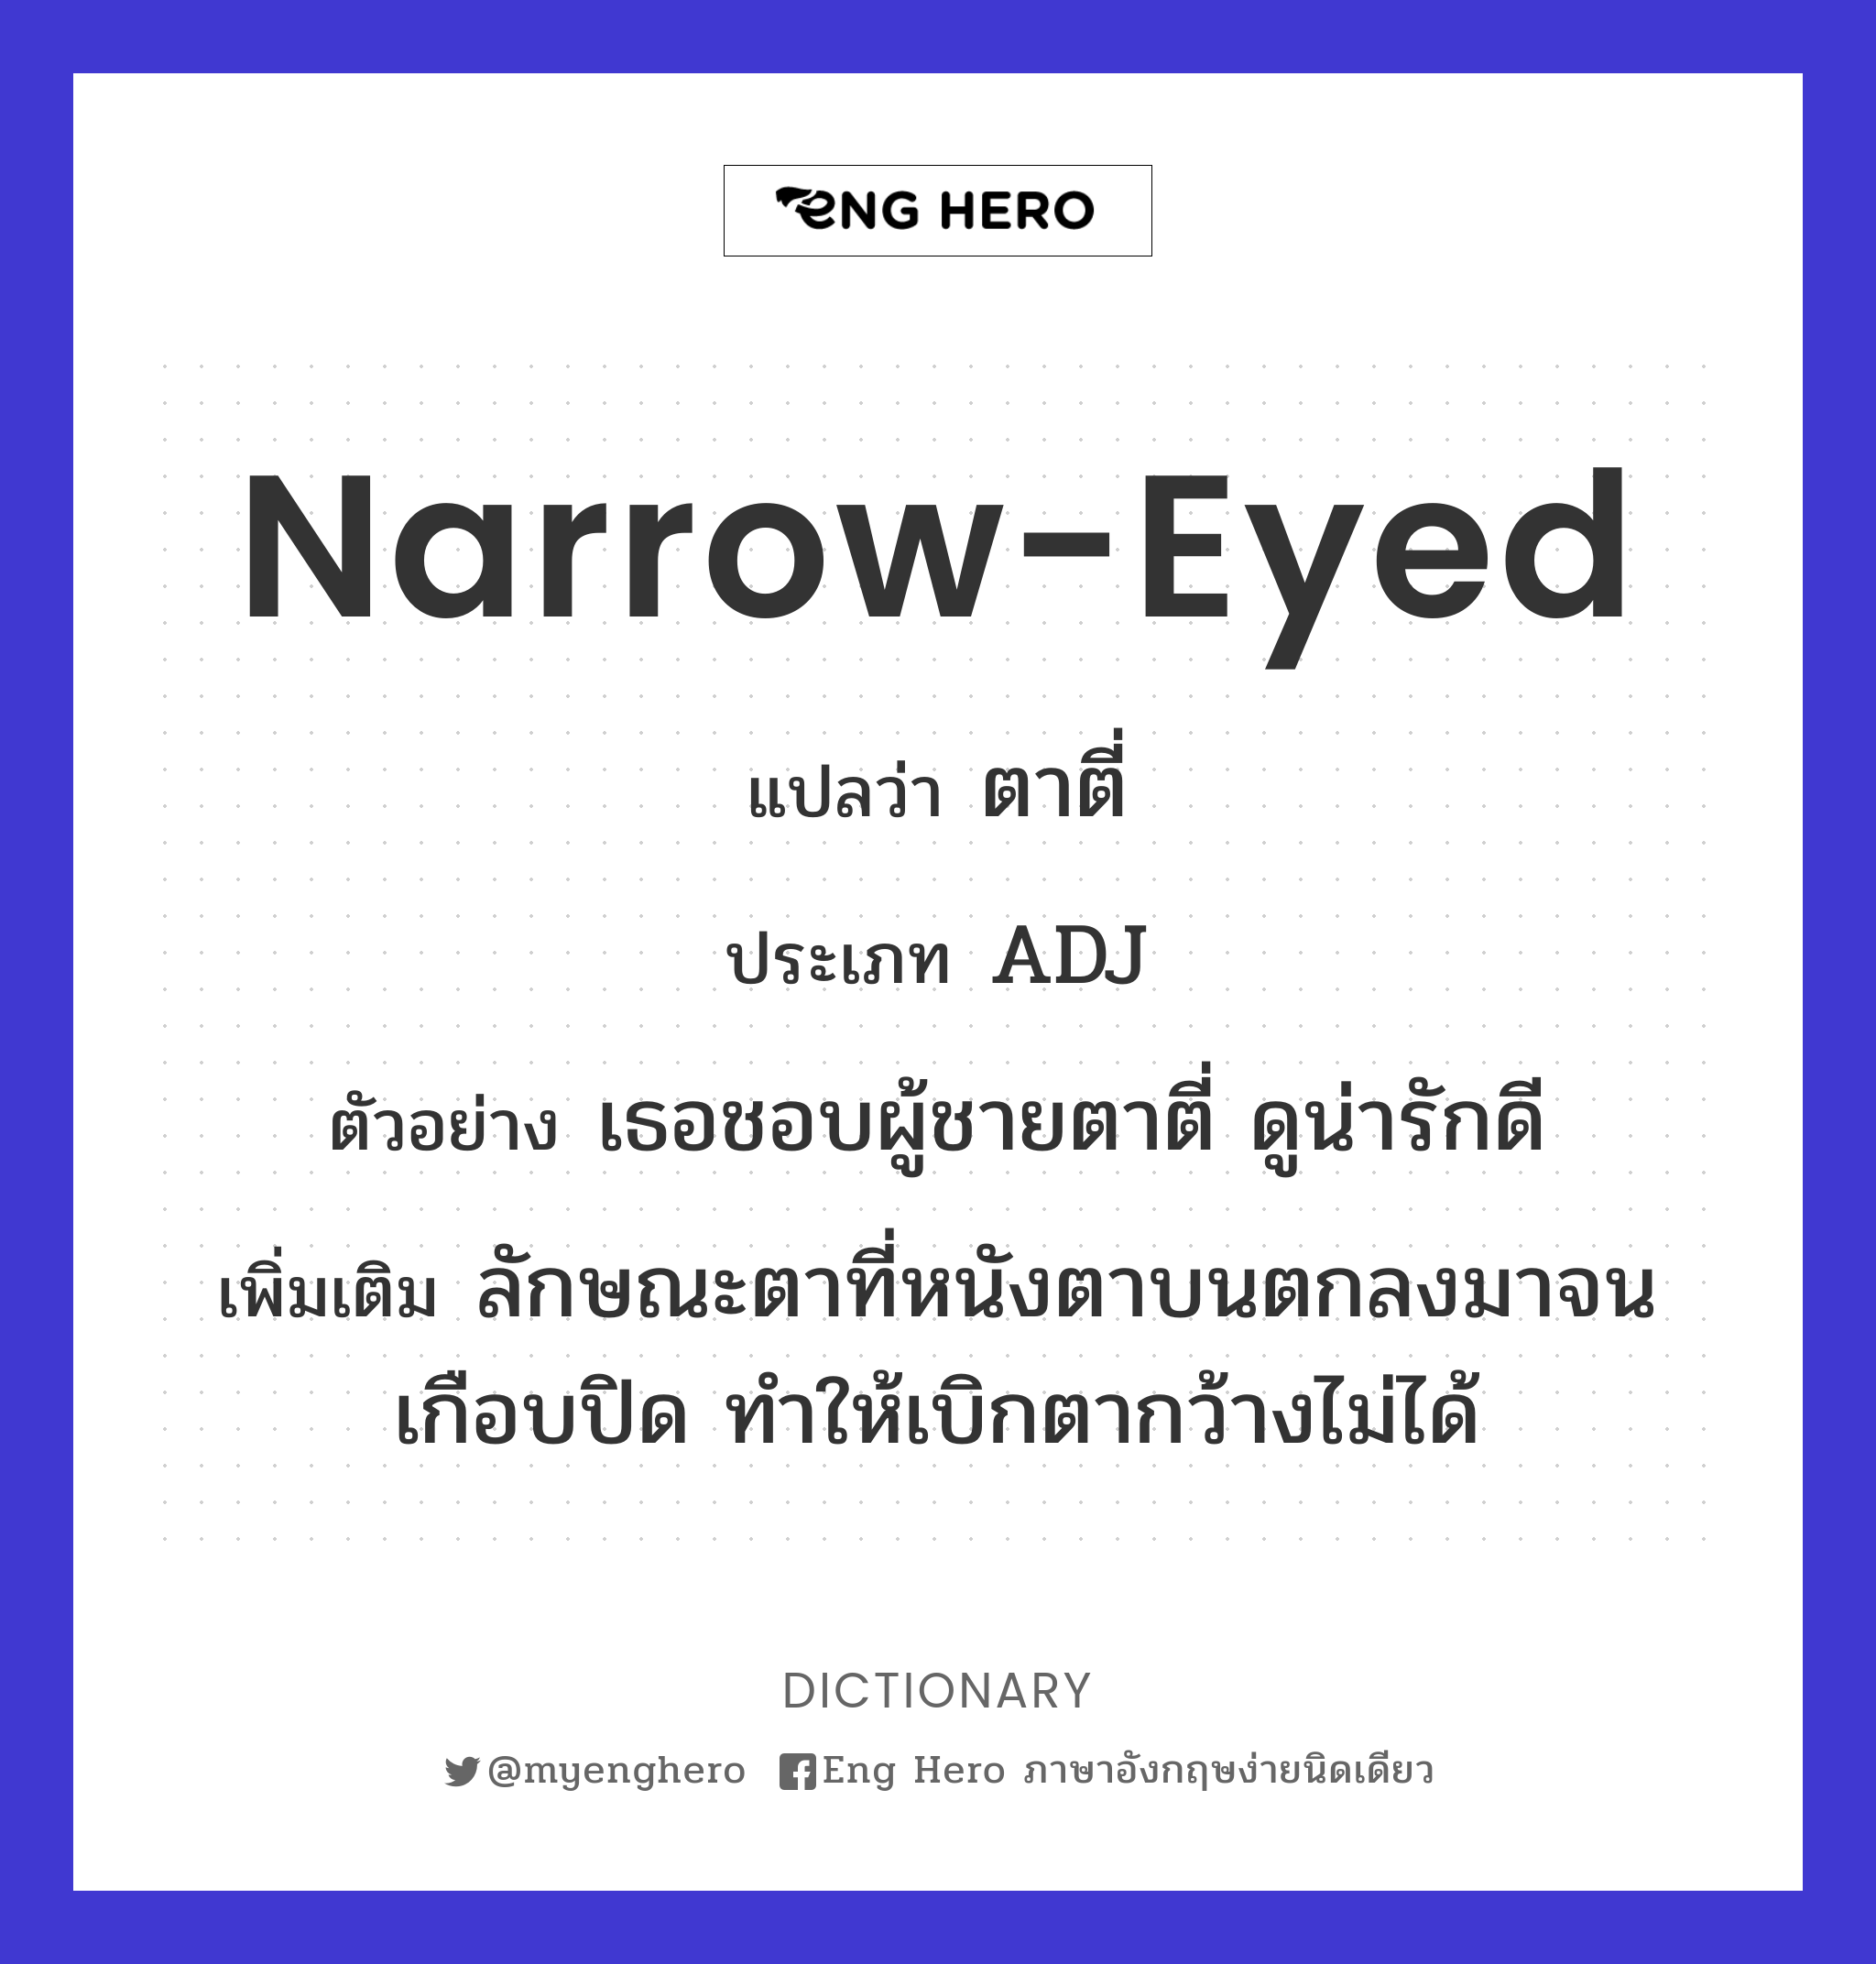 narrow-eyed